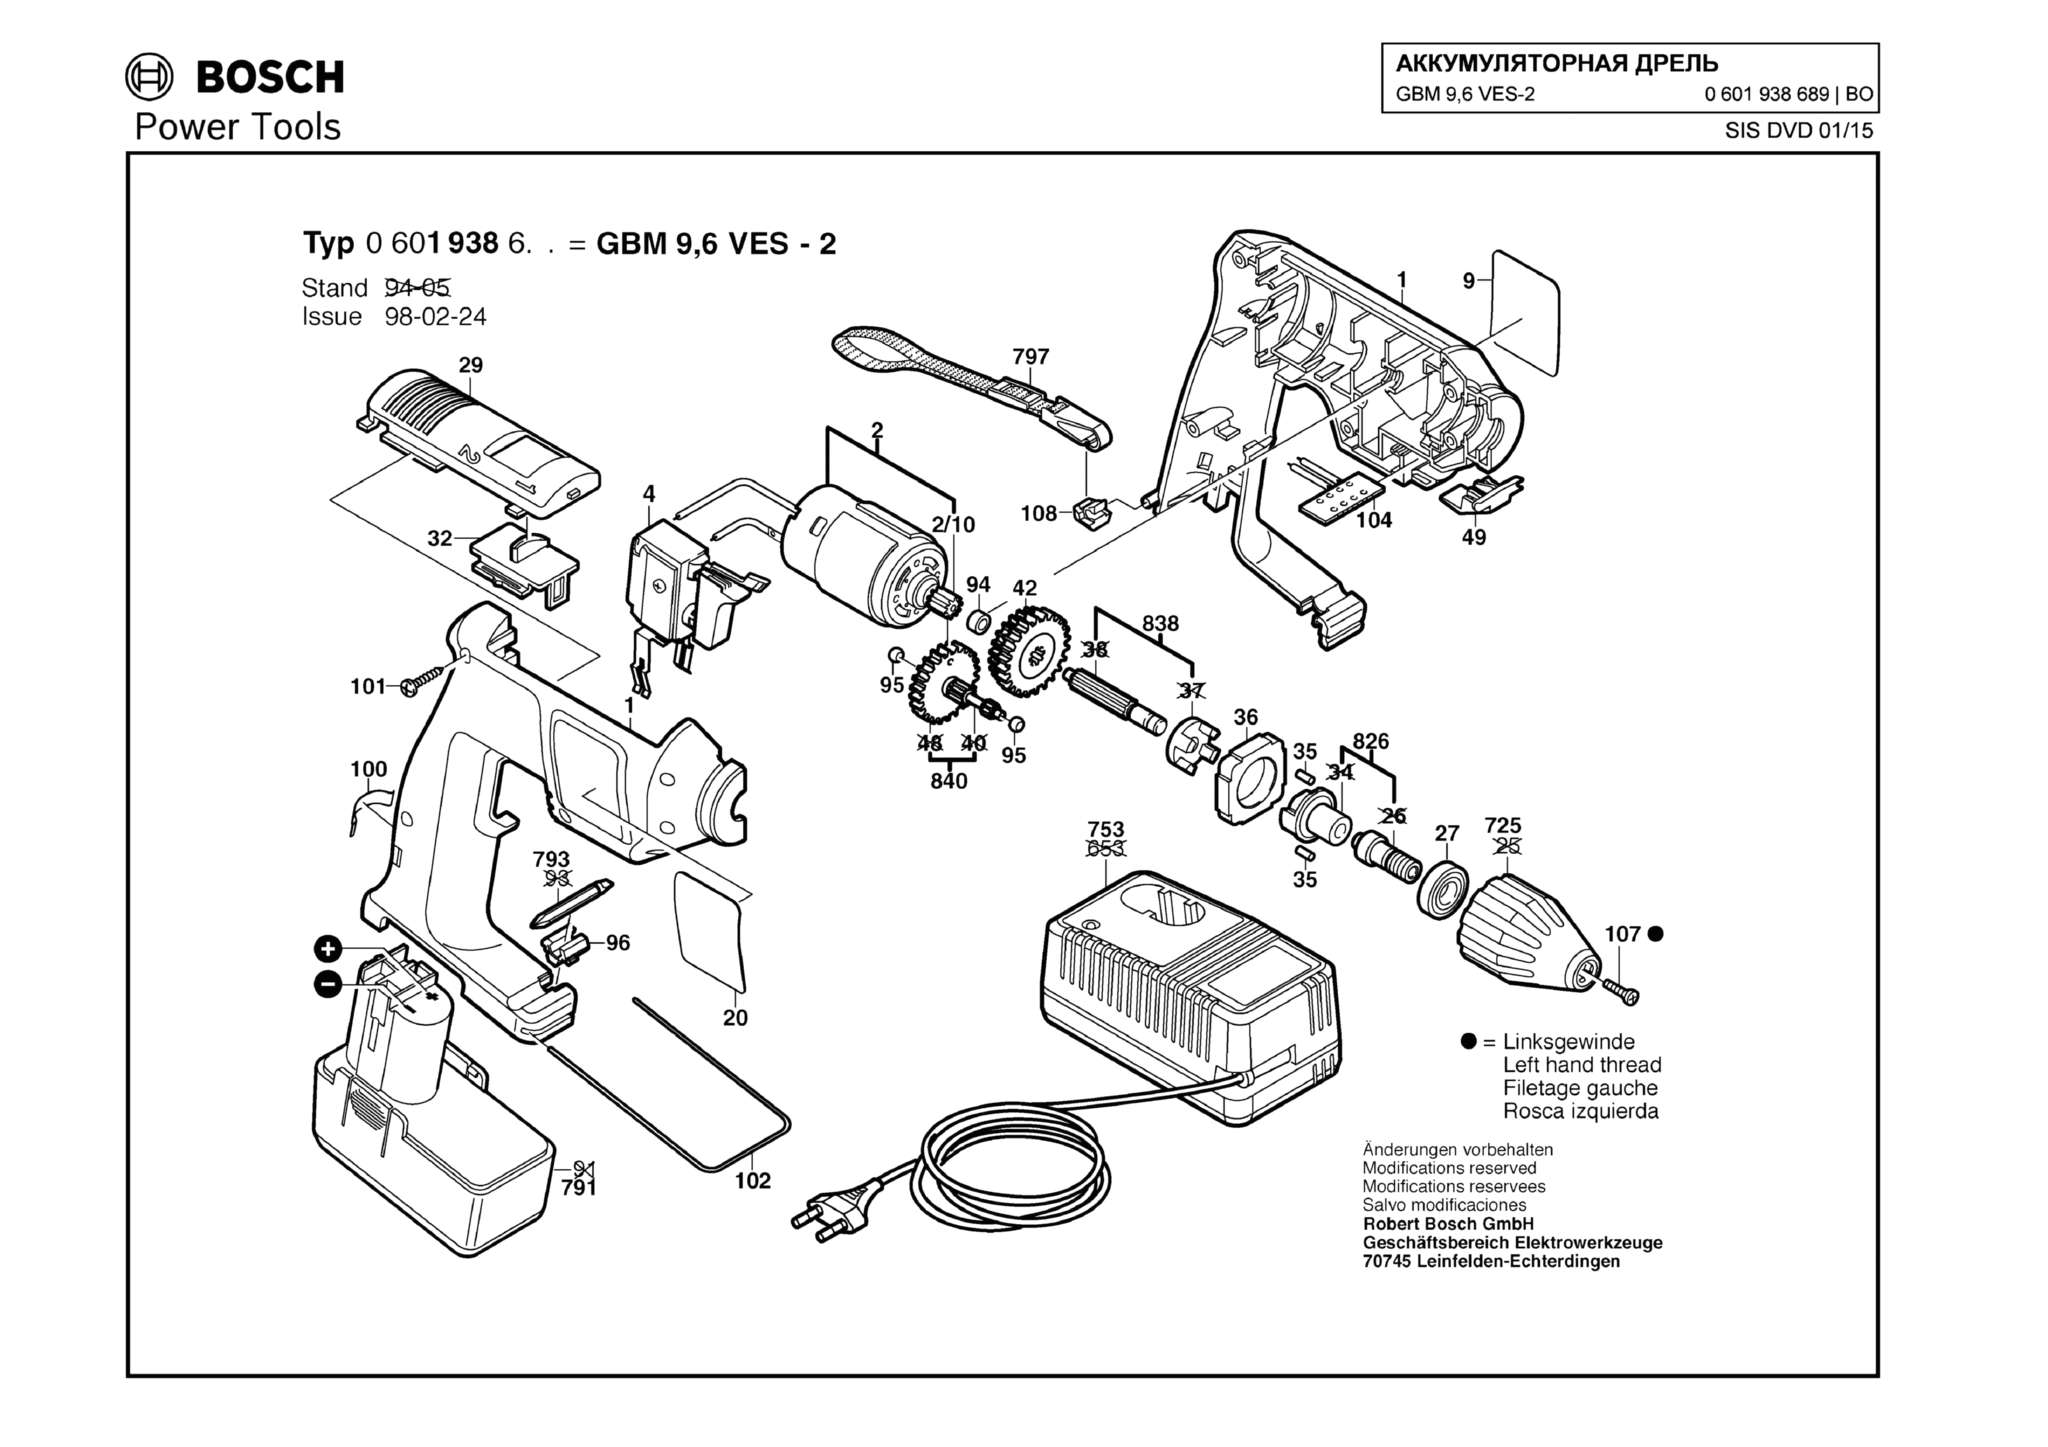 Запчасти, схема и деталировка Bosch GBM 9,6 VES-2 (ТИП 0601938689)